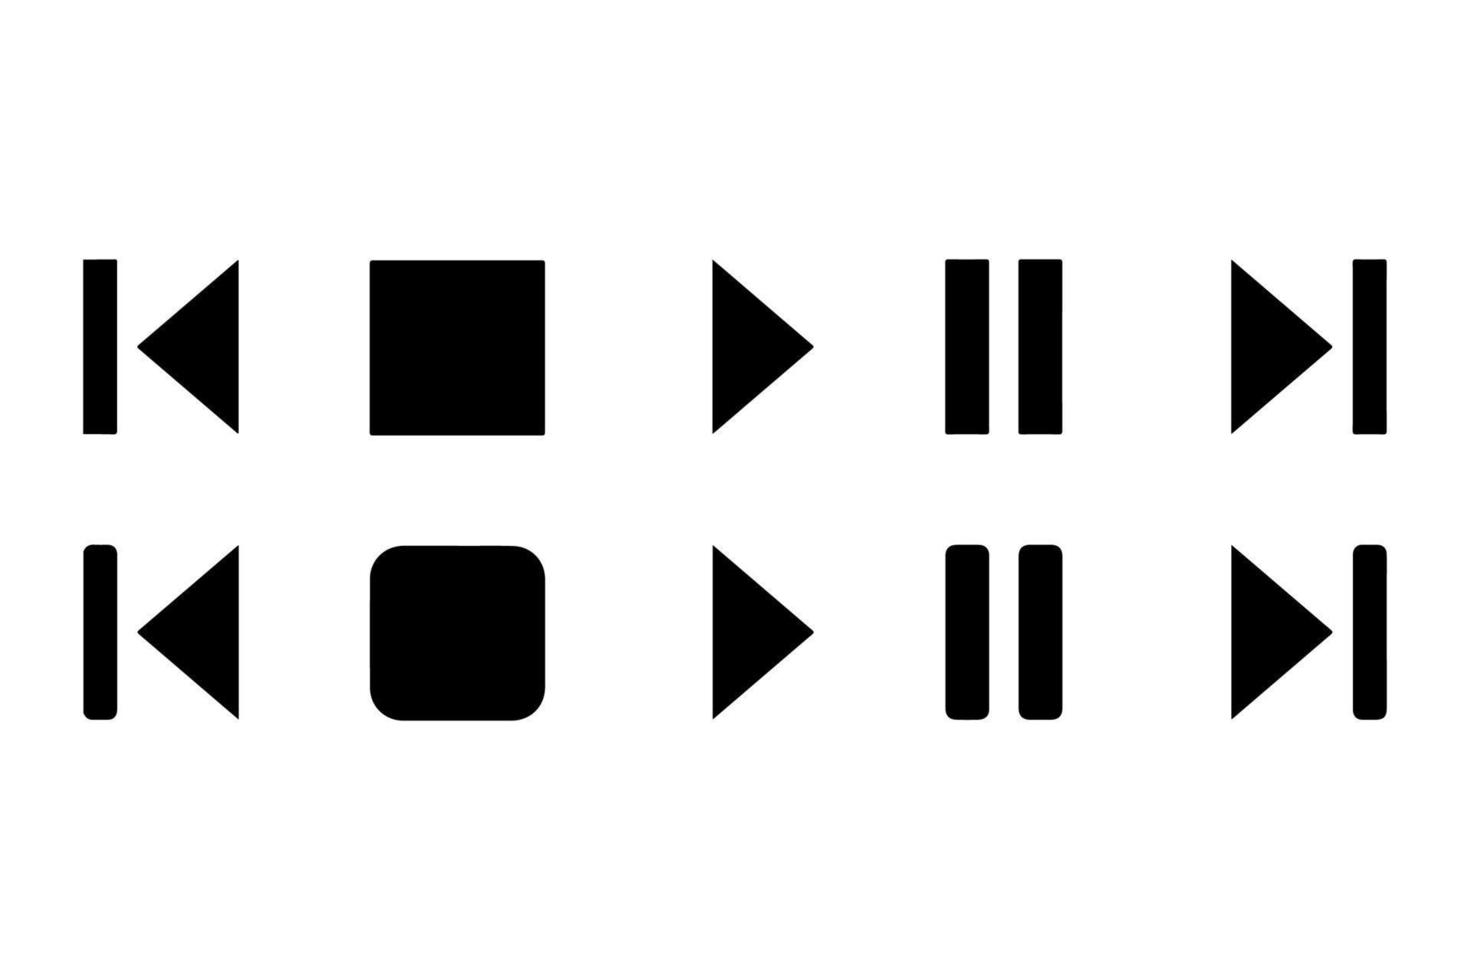 botões, controles de música ou reprodutor de vídeo. reproduzir, pausar, próximo, anterior. símbolos de jogador de vetor. vetor